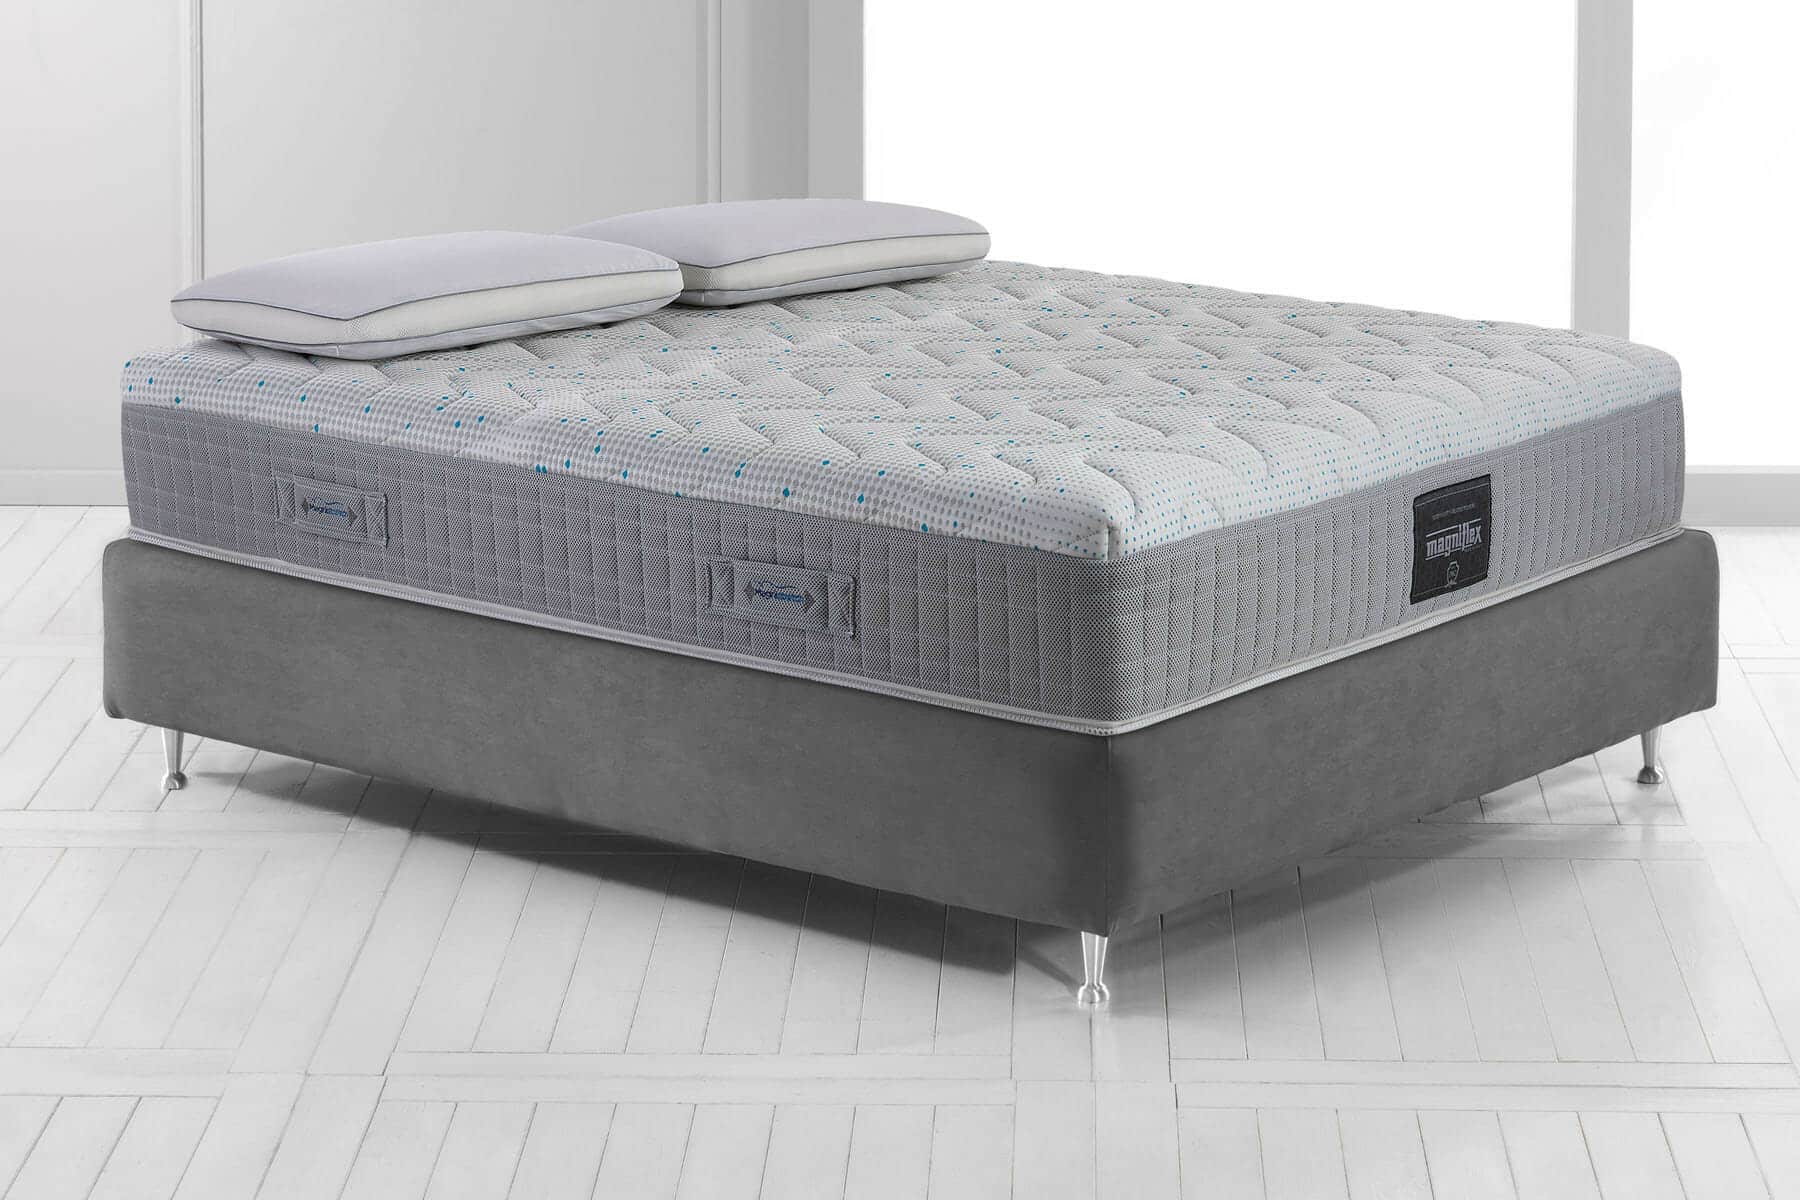 bed frame mattress hidden